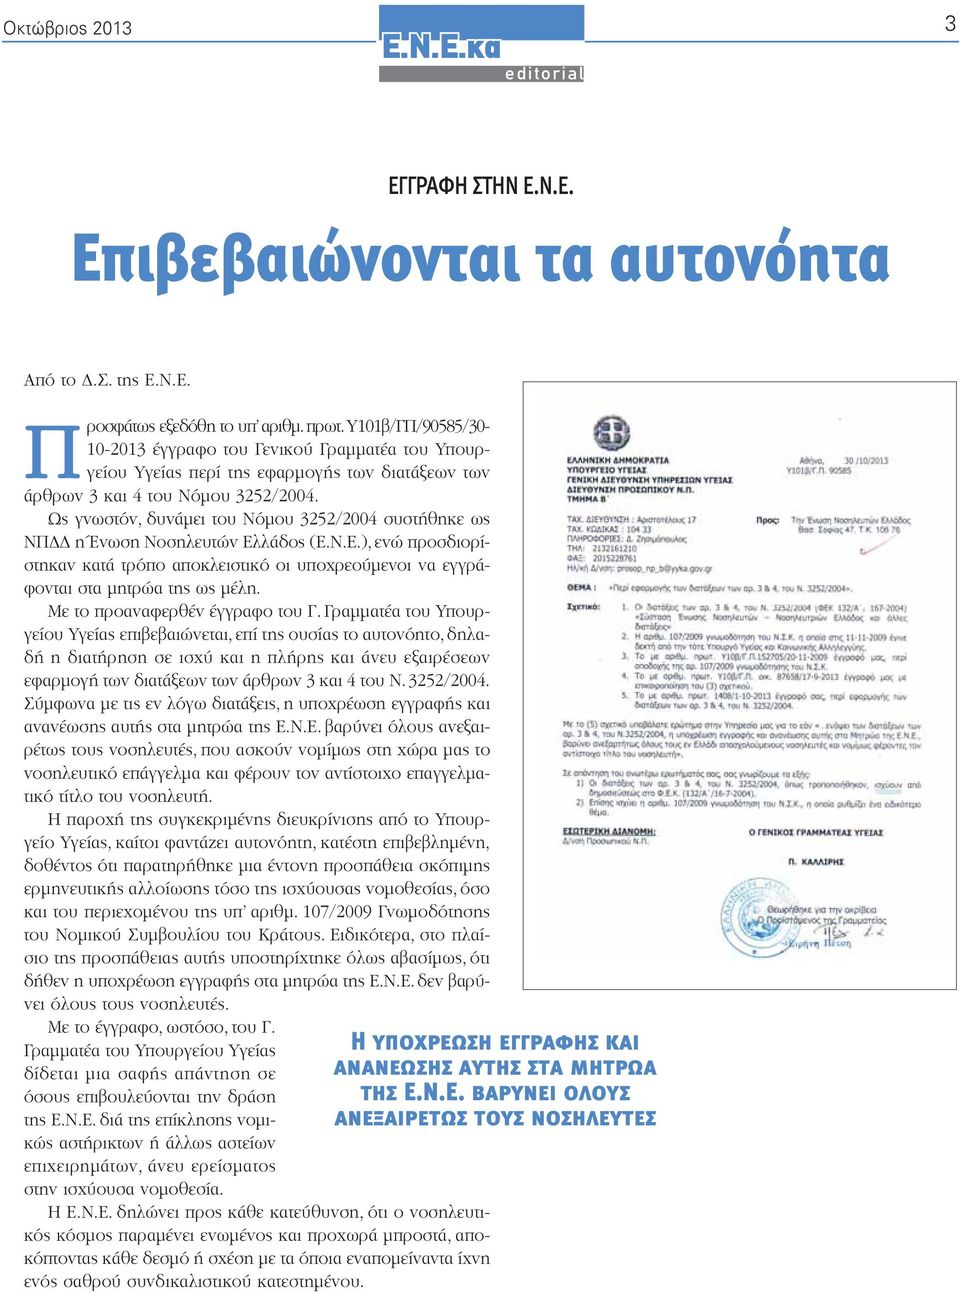 Ως γνωστόν, δυνάμει του Νόμου 3252/2004 συστήθηκε ως ΝΠΔΔ η Ένωση Νοσηλευτών Ελλάδος (), ενώ προσδιορίστηκαν κατά τρόπο αποκλειστικό οι υποχρεούμενοι να εγγράφονται στα μητρώα της ως μέλη.